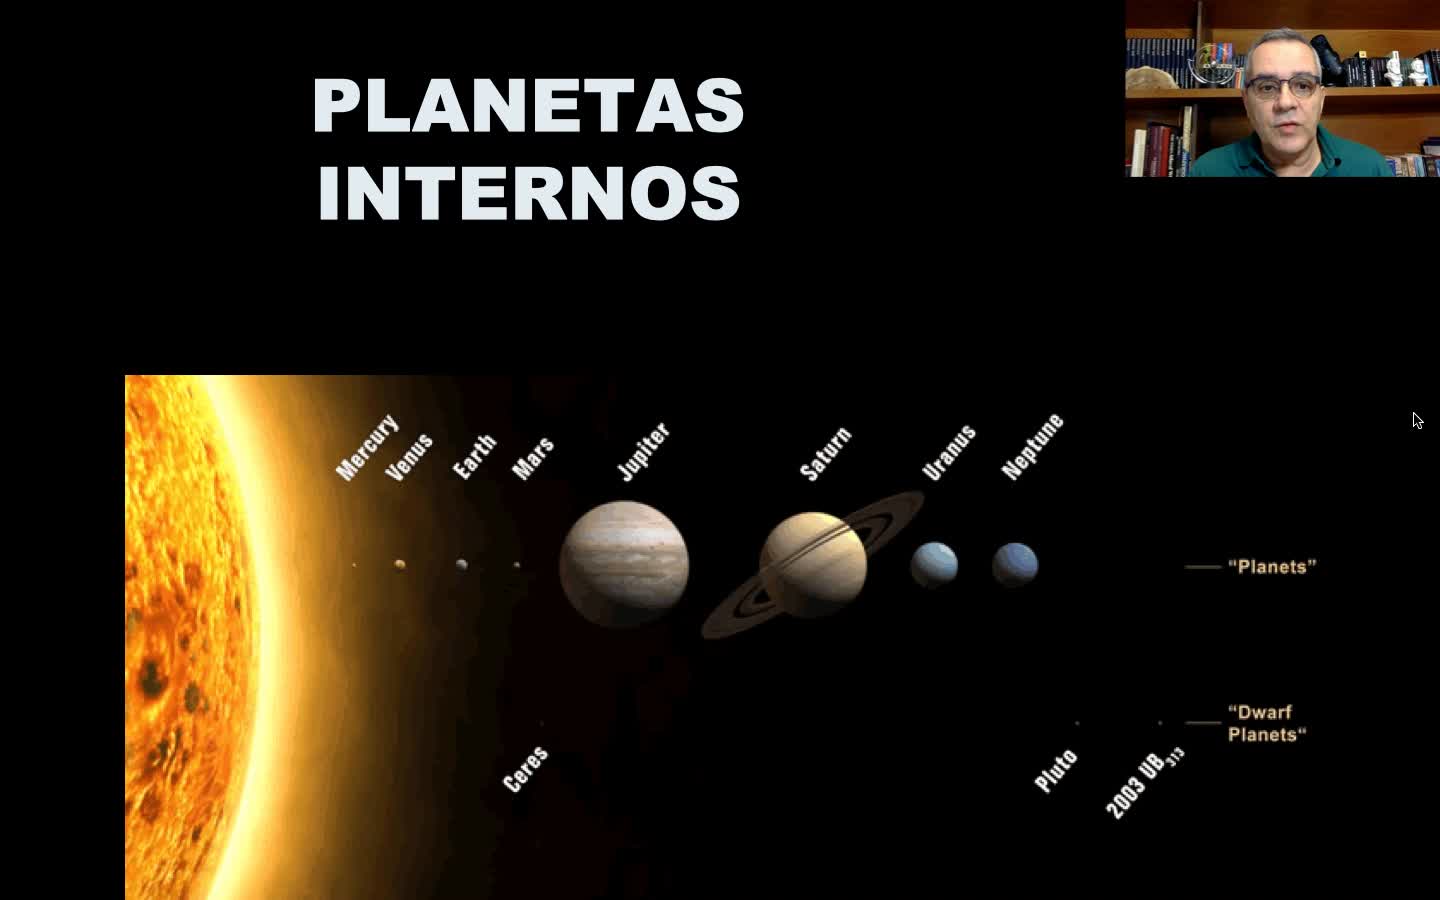 e-Aulas da USP :: Os planetas internos - Parte 1